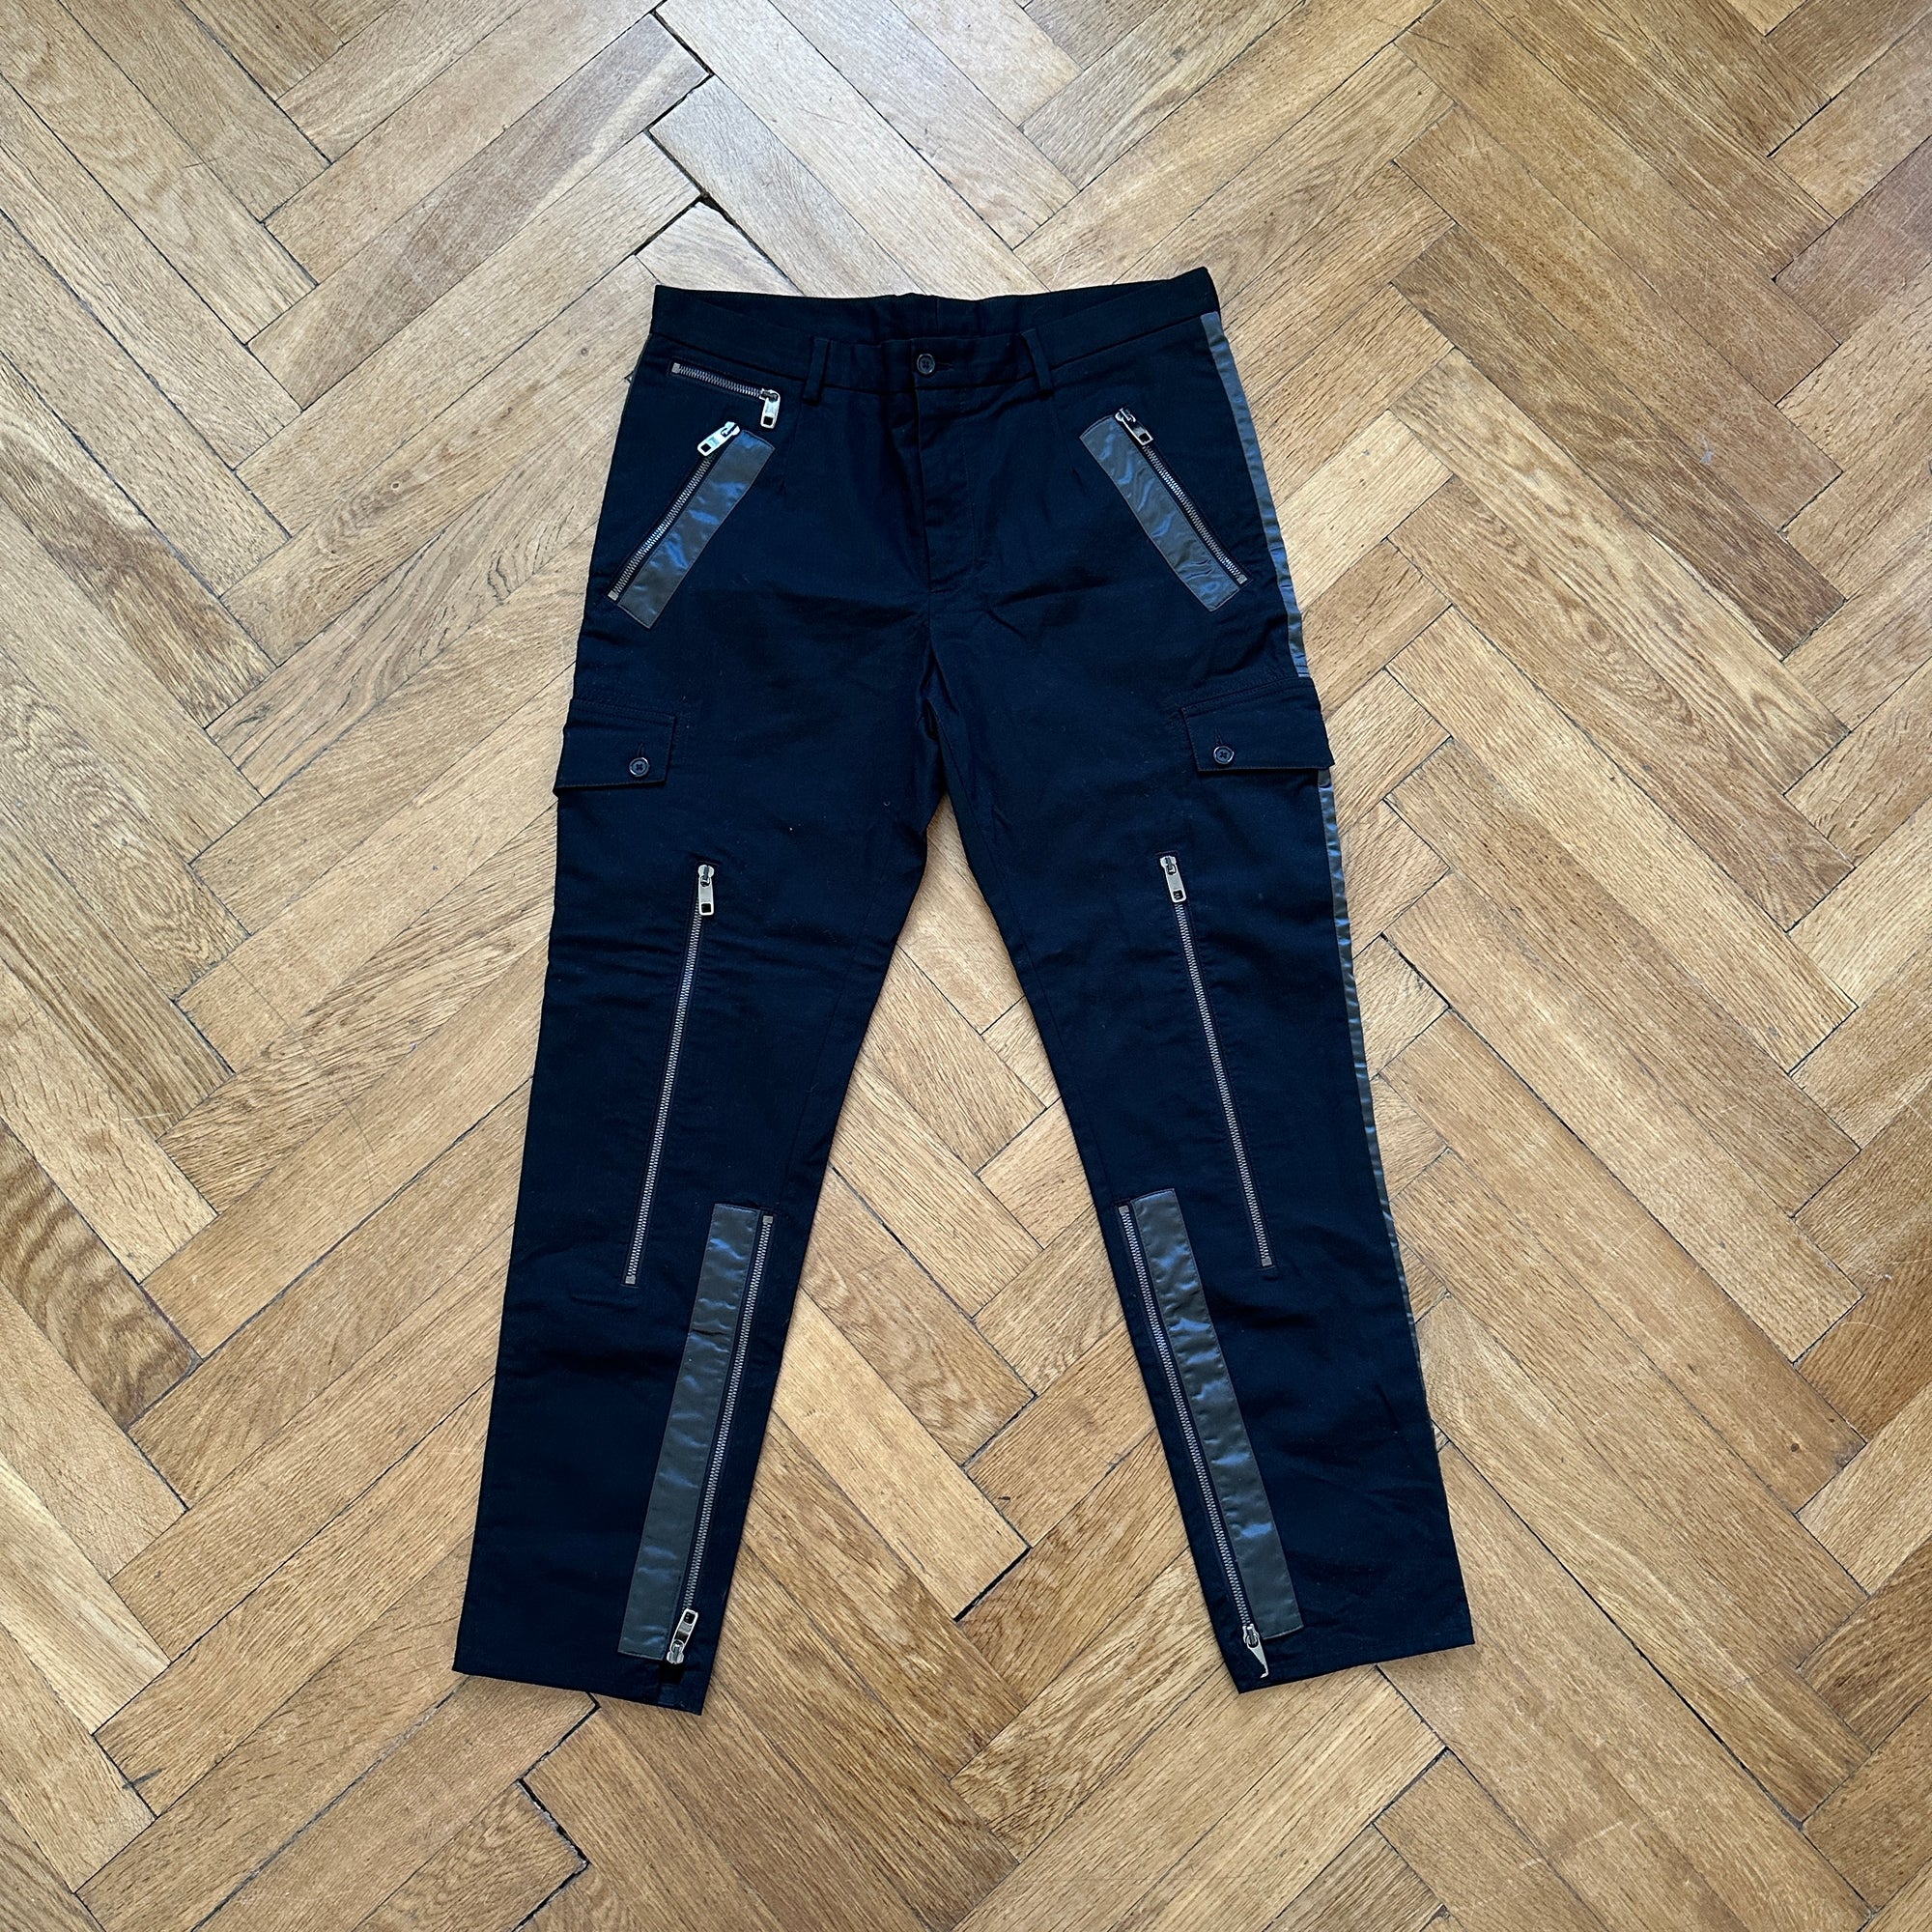 Louis Vuitton Cargo Pants Blue. Size 42